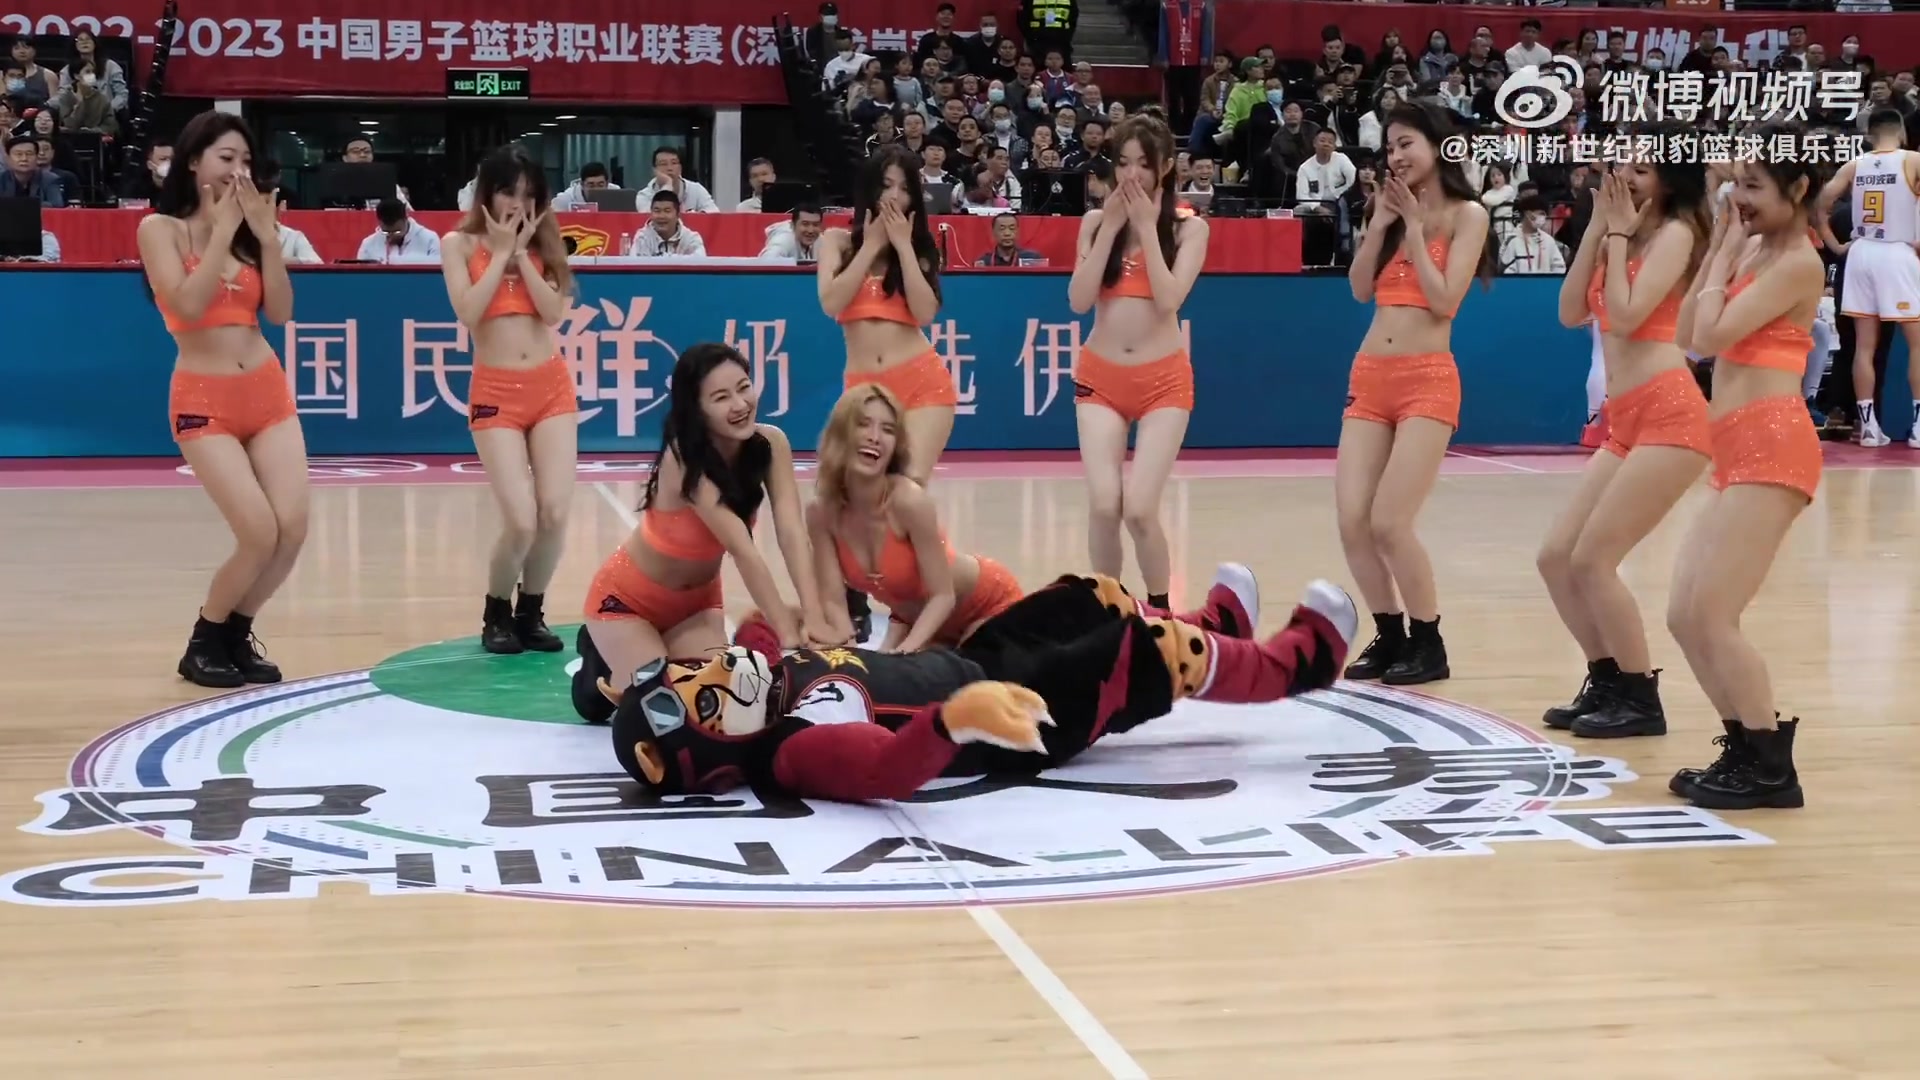 这舞跳得有点尬啊！深圳啦啦队抢救吉祥物“小豹子”